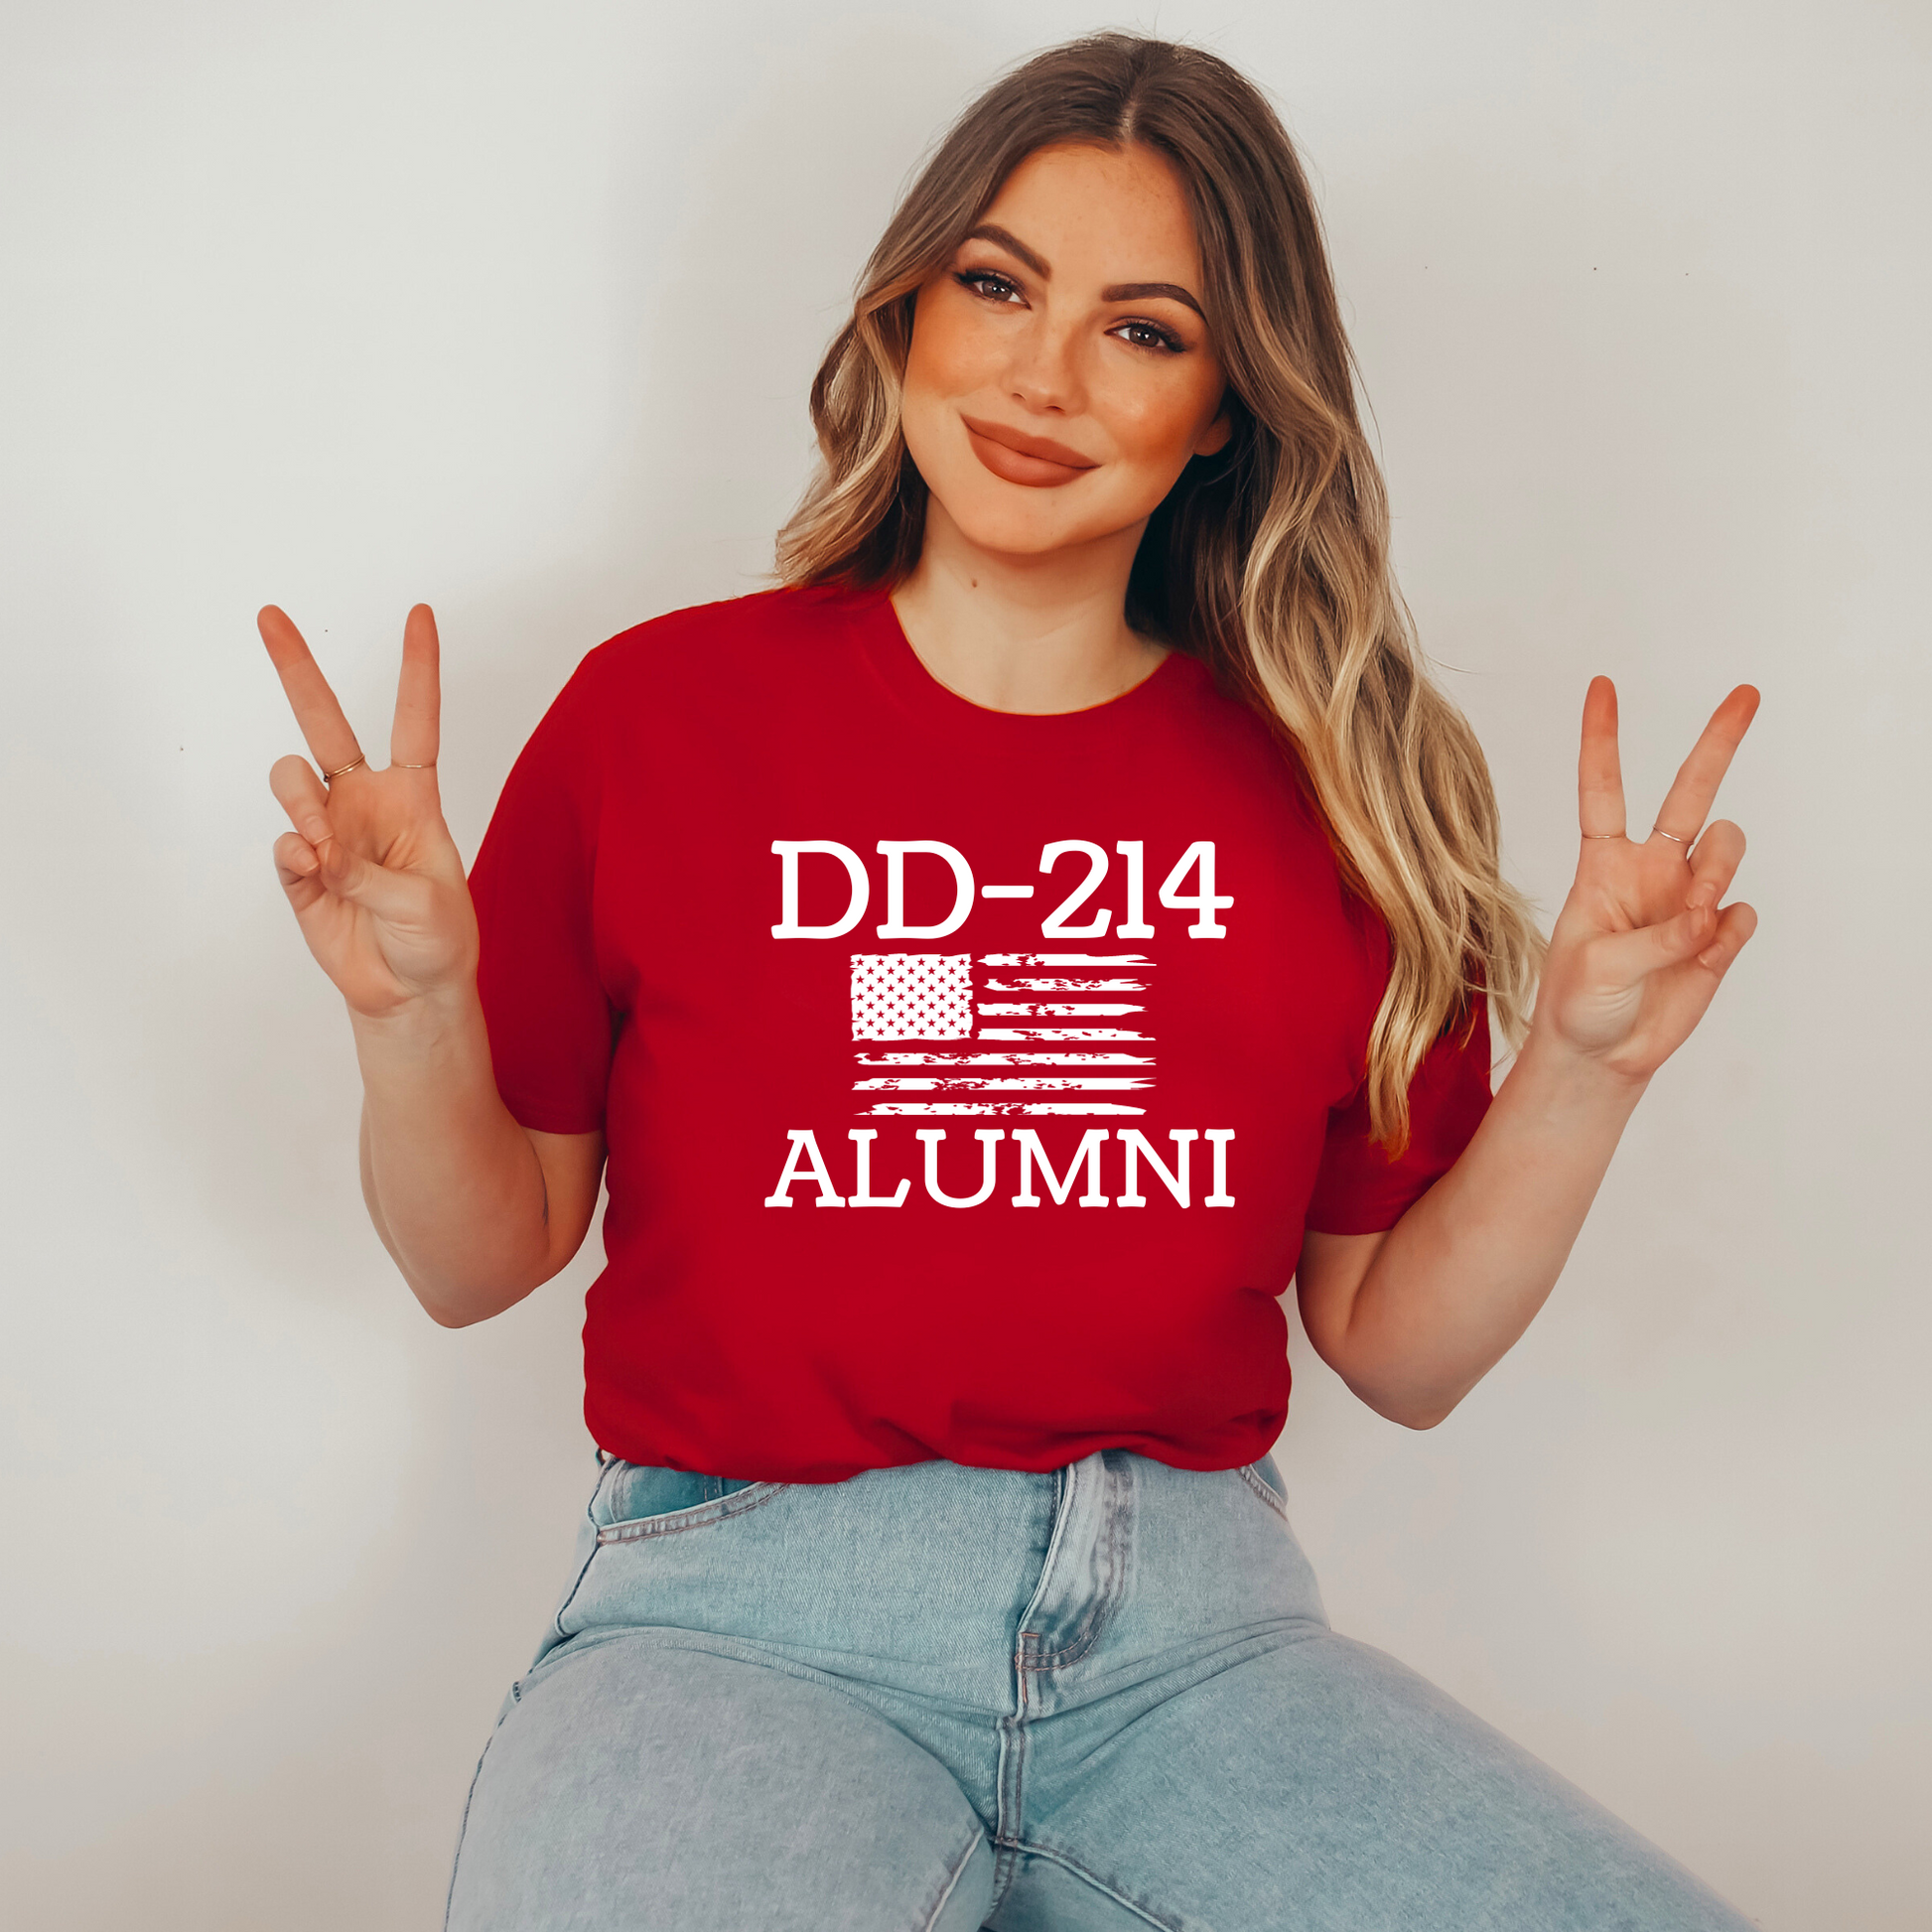 DD-214 Alumni T-shirt